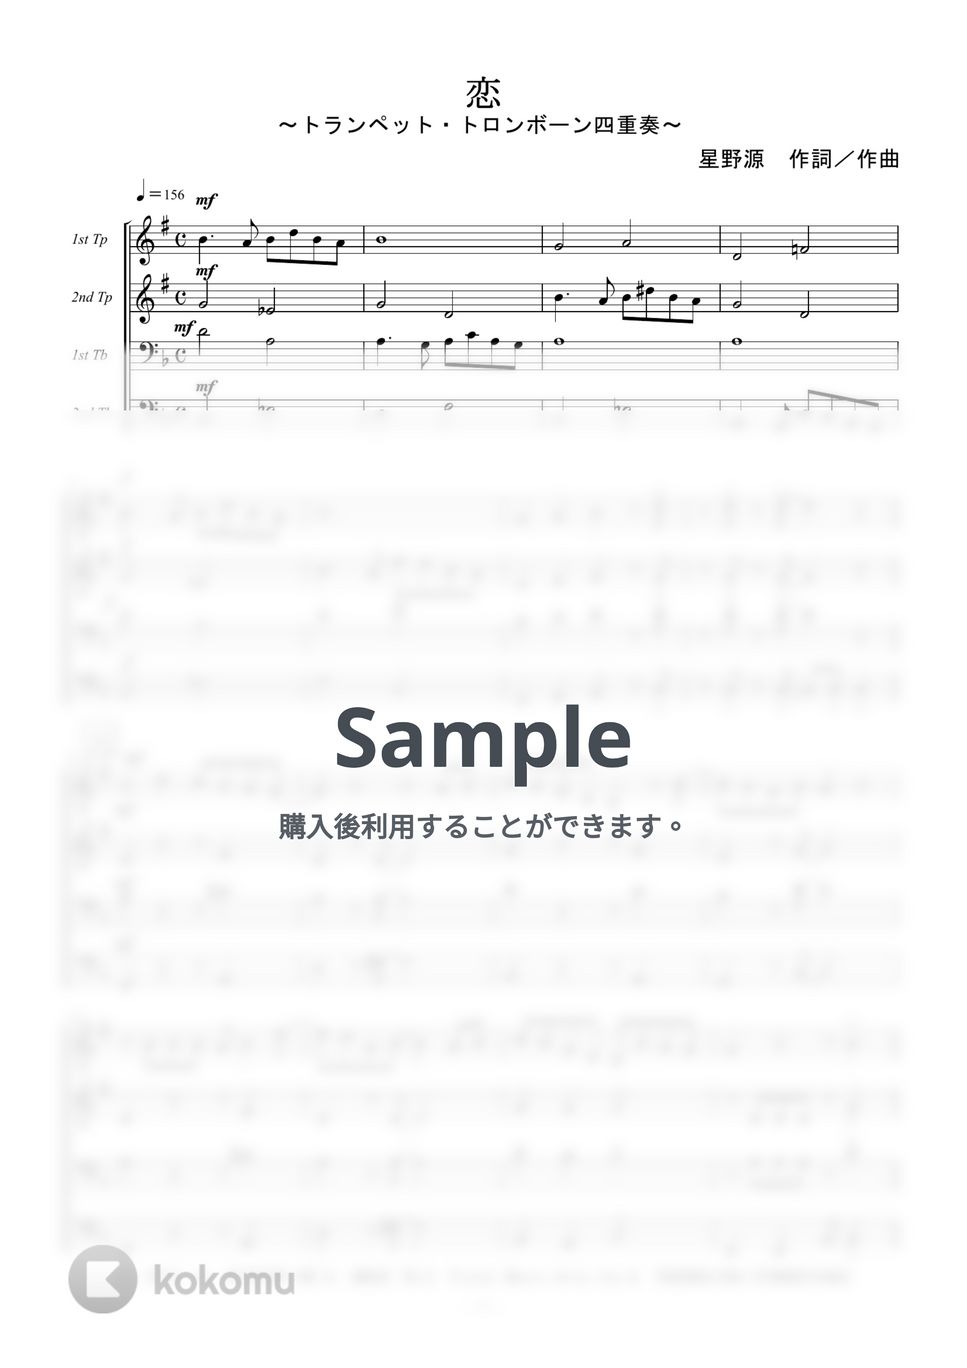 星野源 - 恋 (トランペット・トロンボーン四重奏) by kiminabe